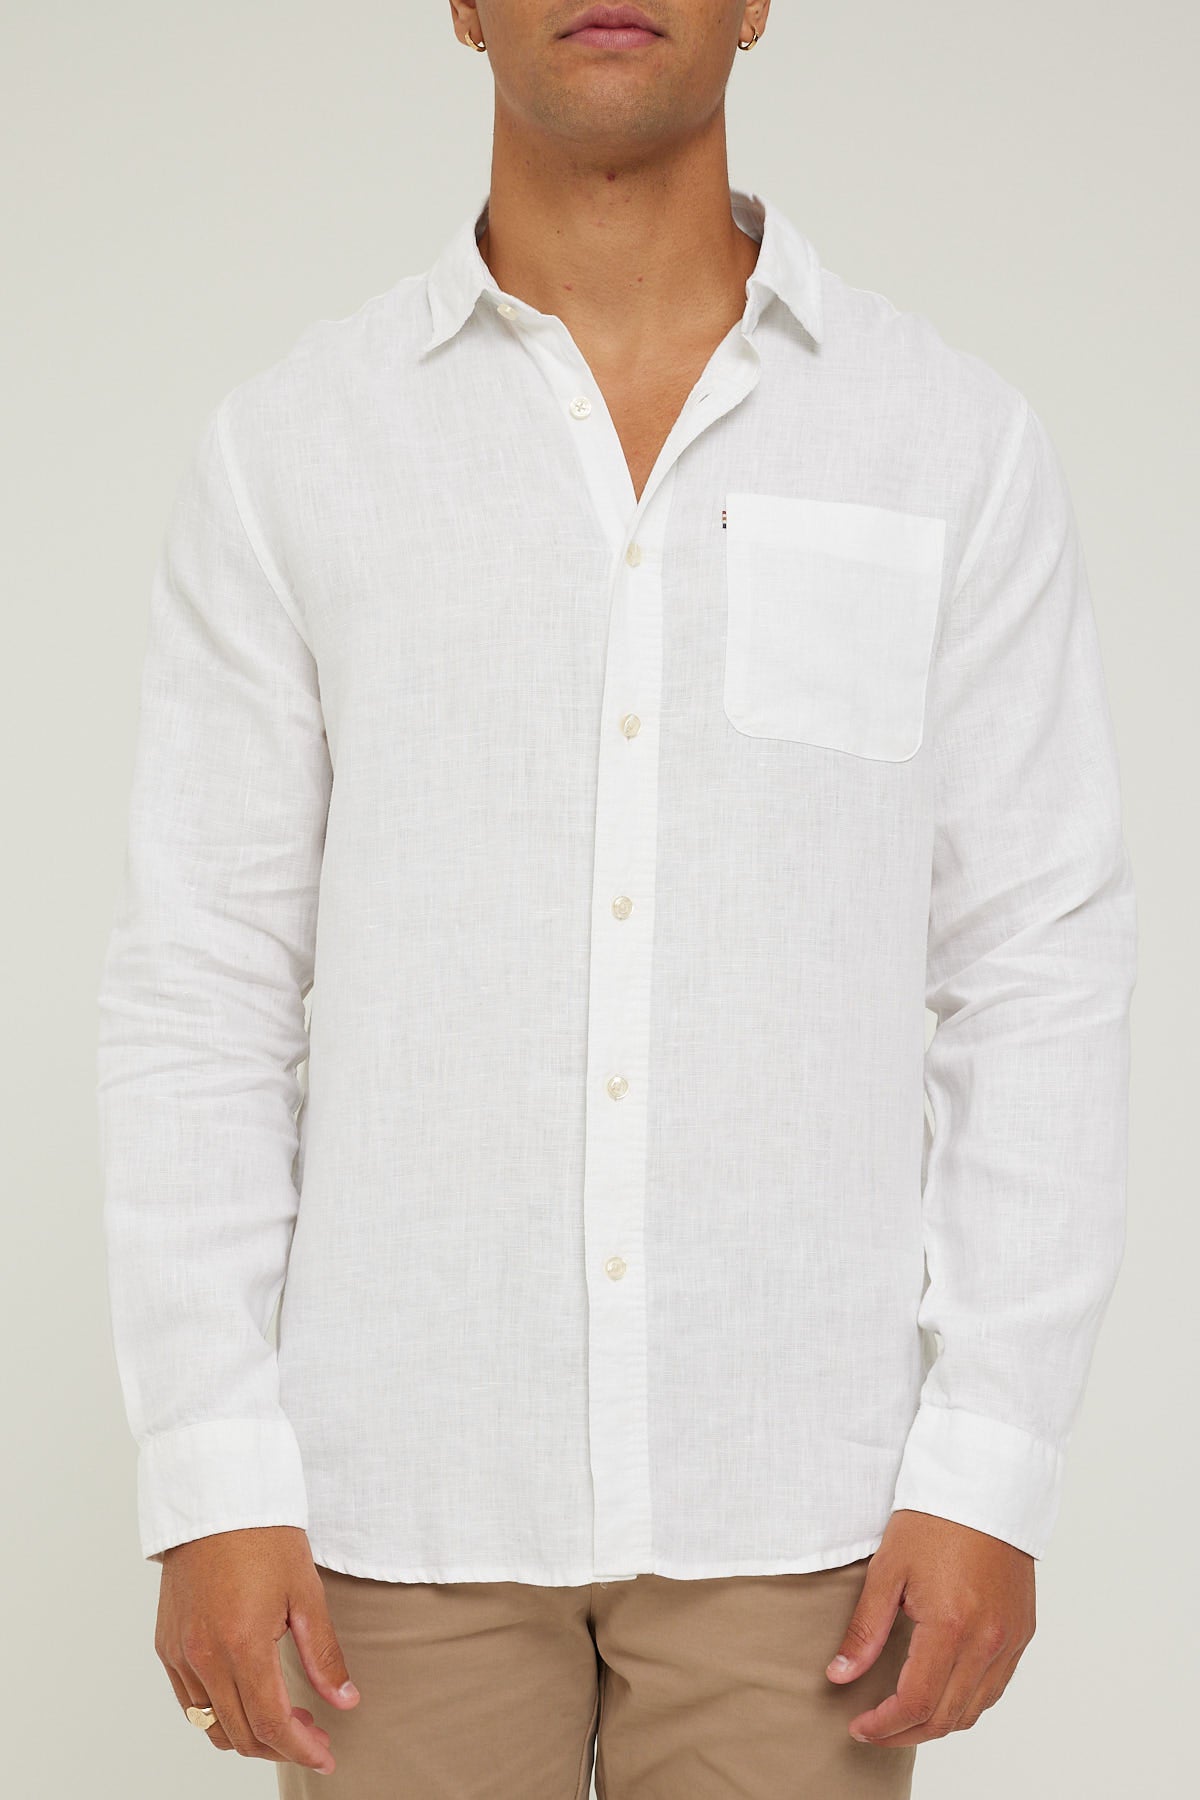 Academy Brand Hampton LS Shirt White – Universal Store